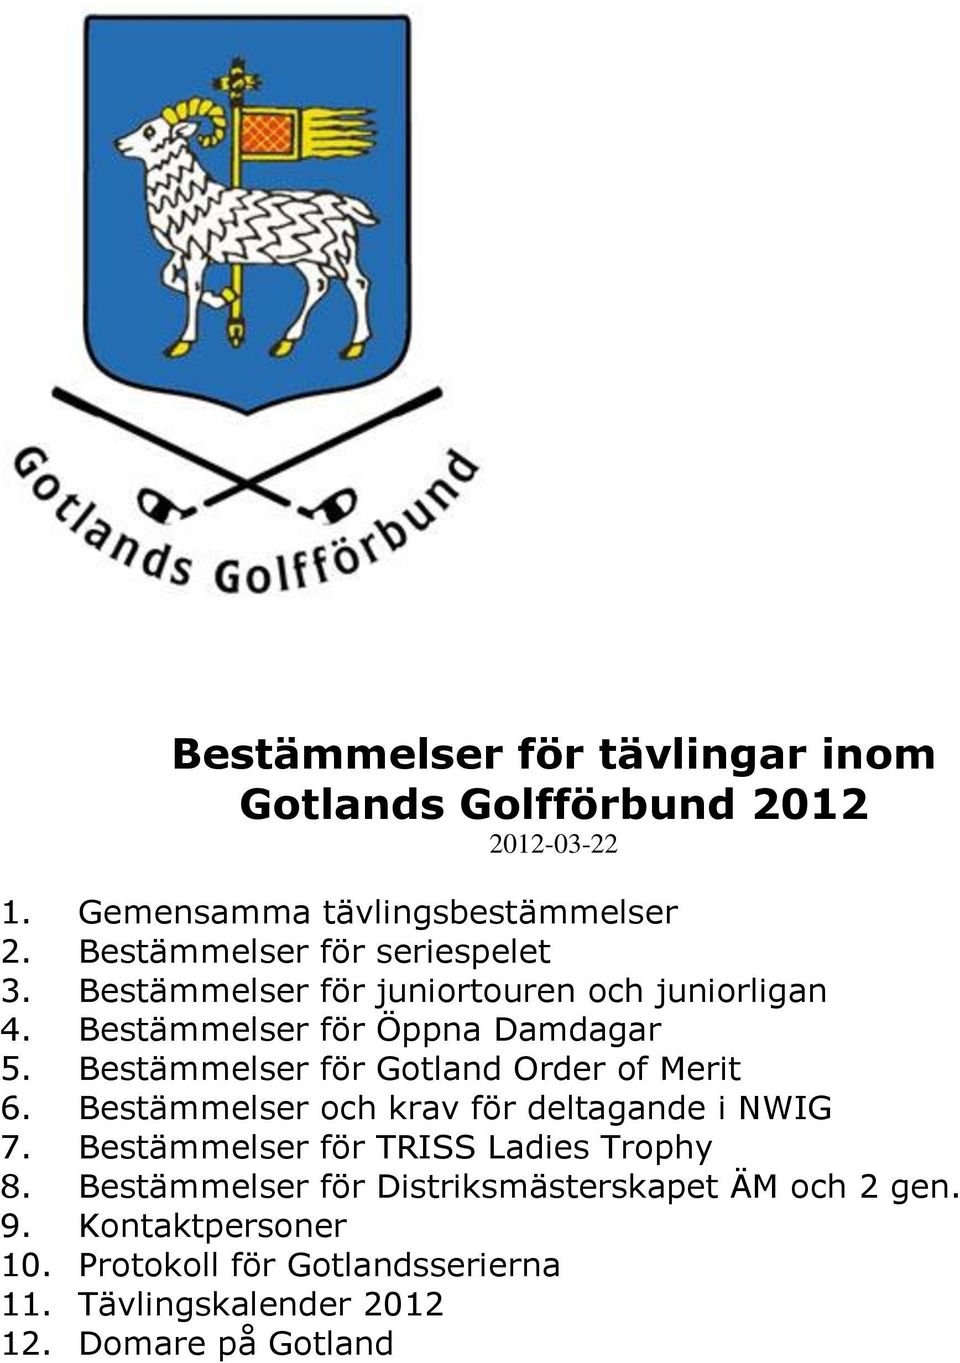 Bestämmelser för Gotland Order of Merit 6. Bestämmelser och krav för deltagande i NWIG 7.